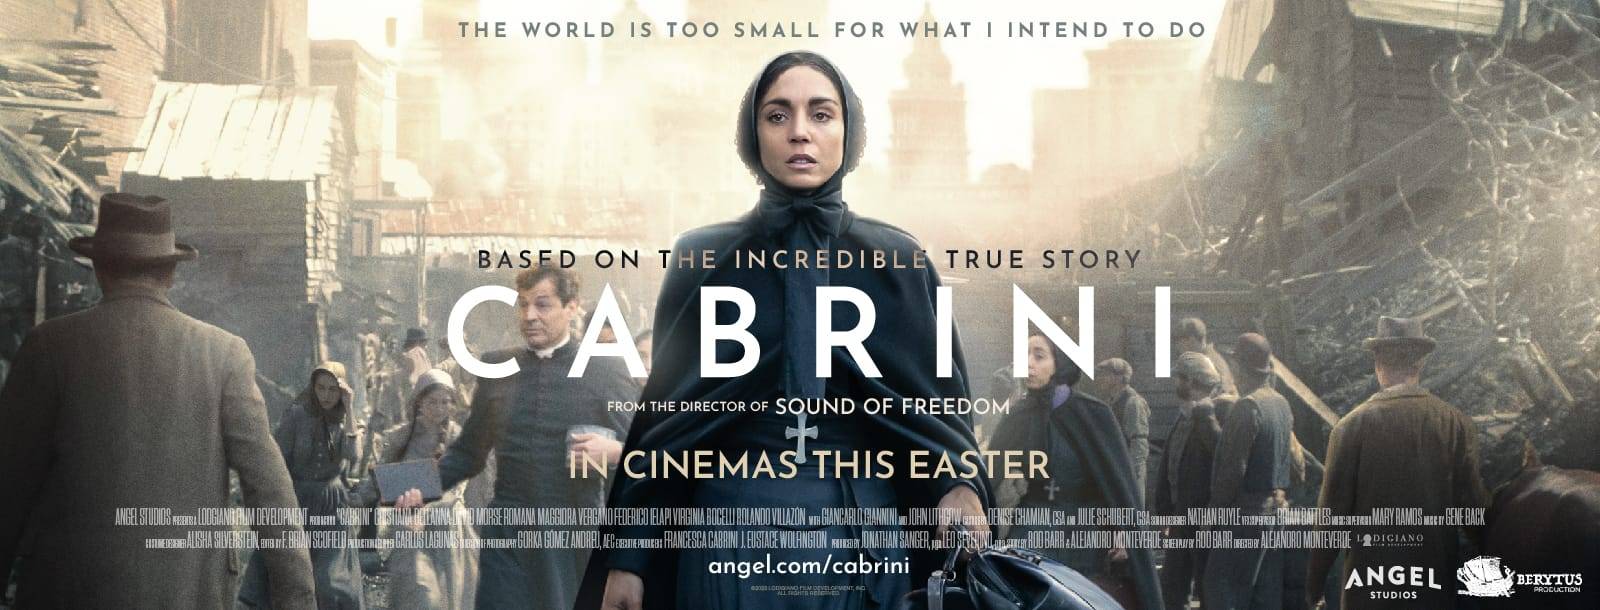 فيلم القديسة كابريني  Cabrini وبطلته في لبنان قريباً